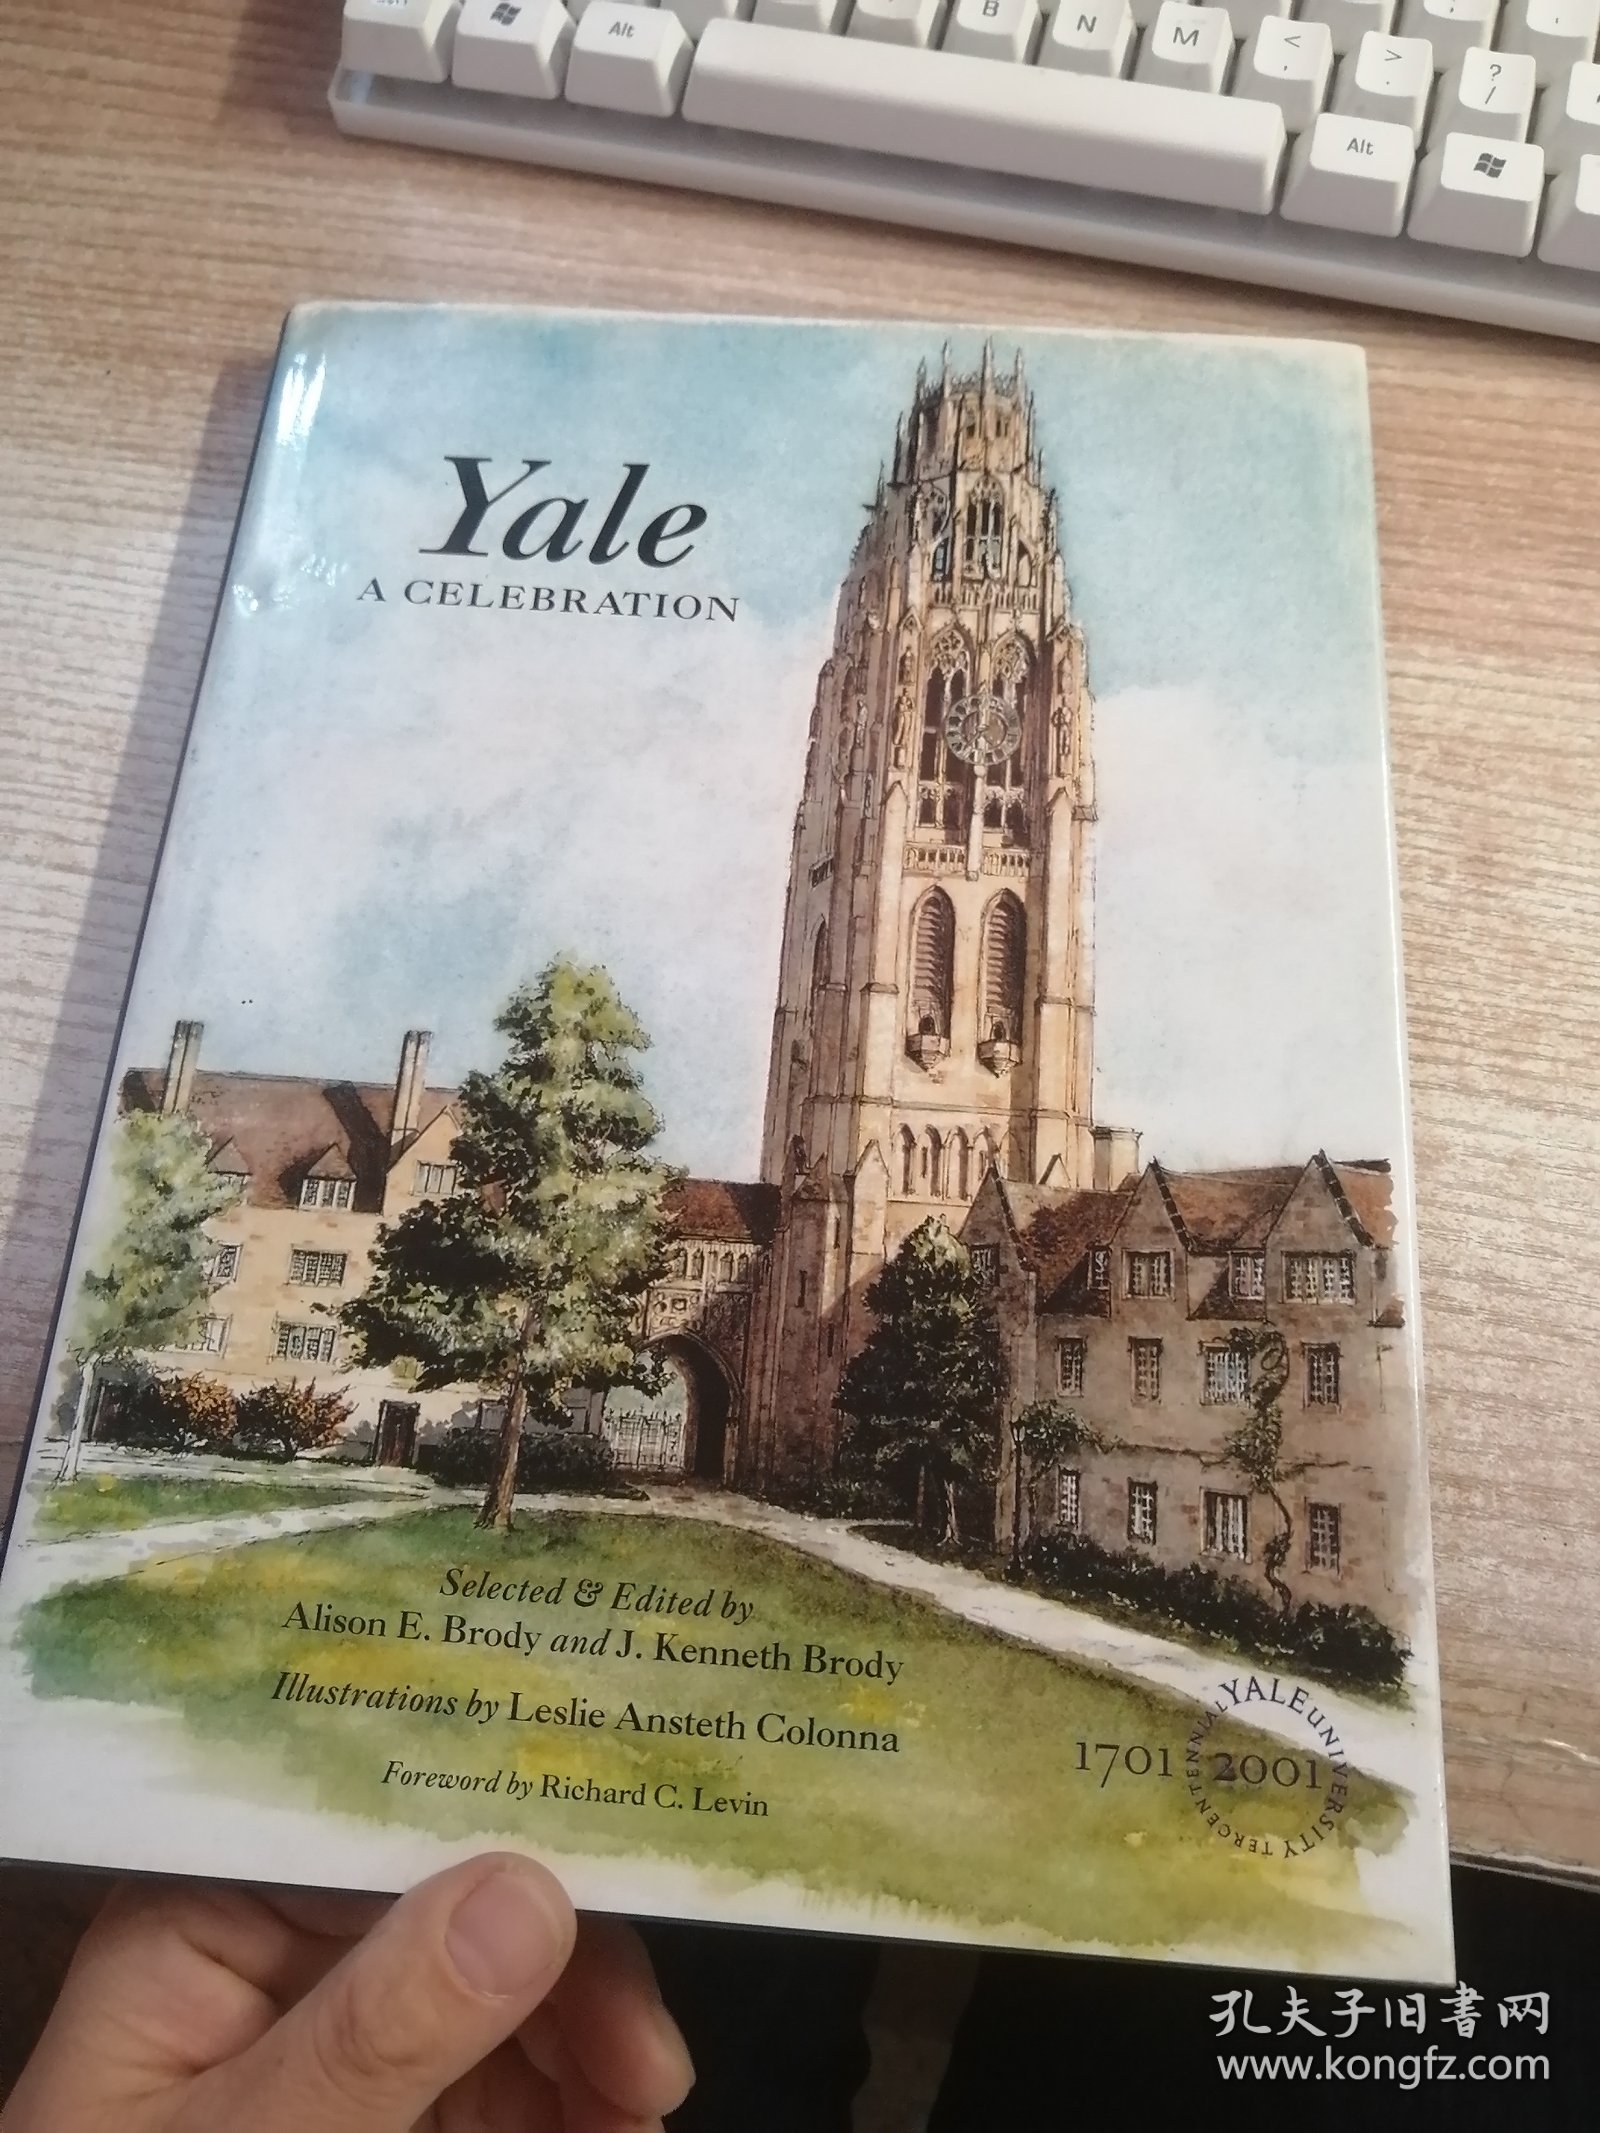 Yale: A Celebration